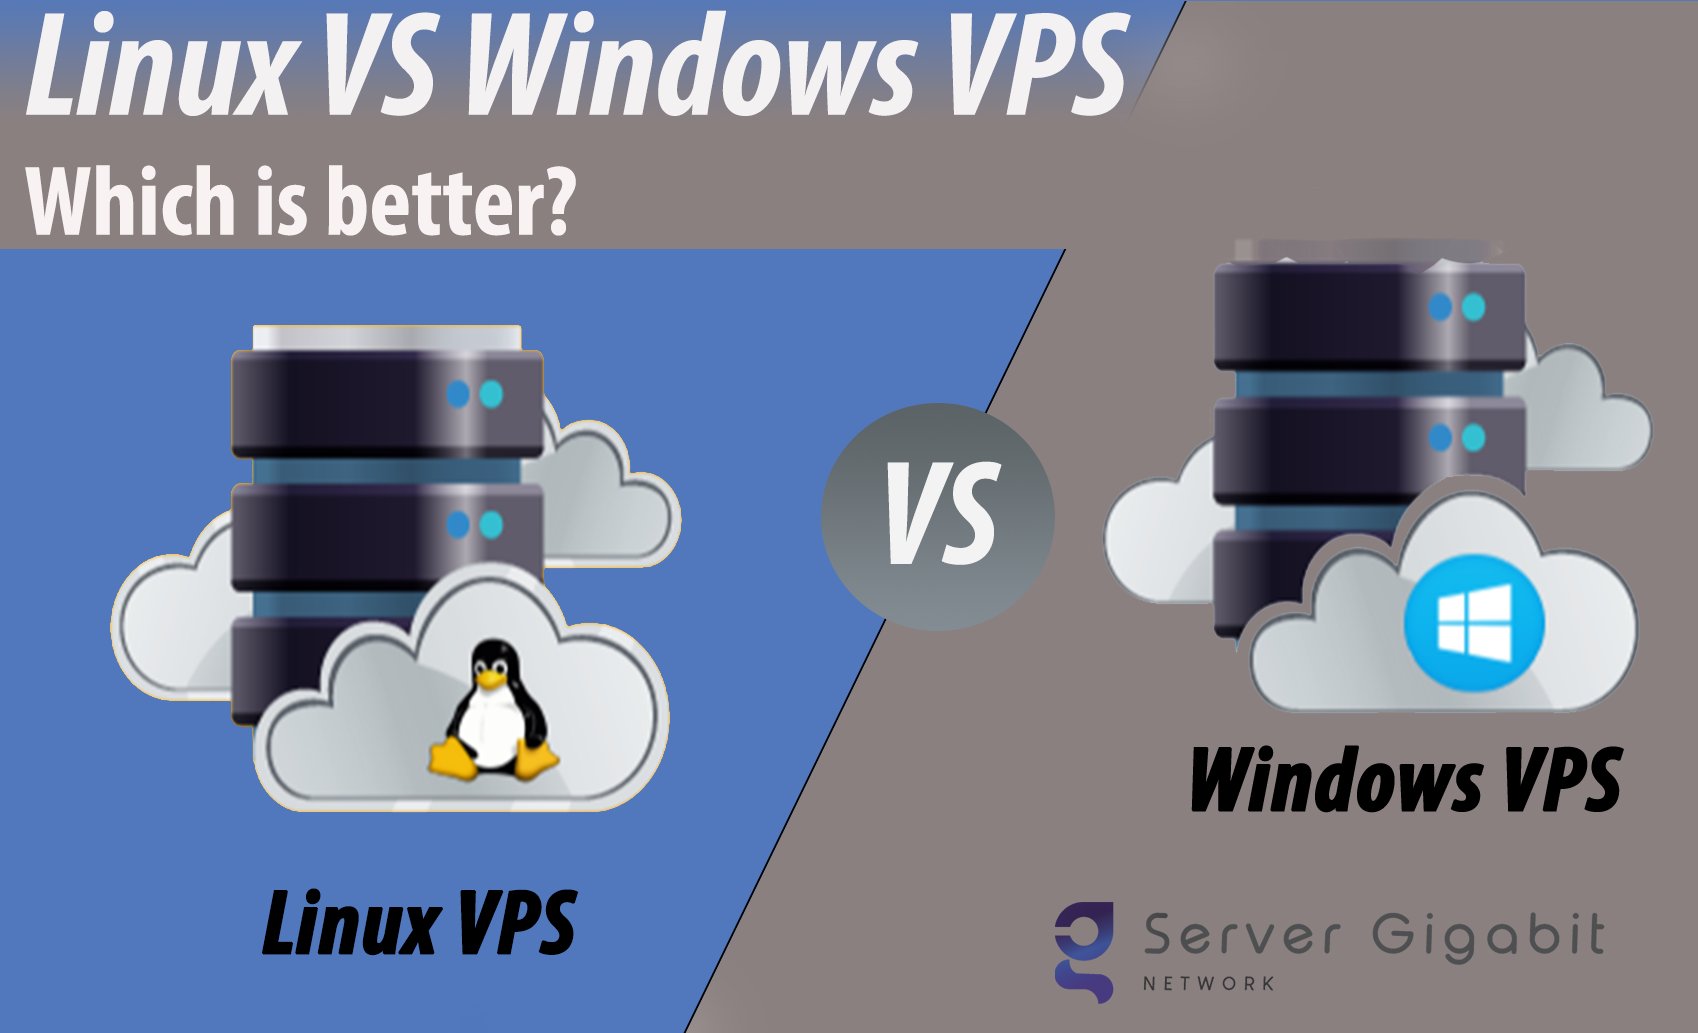 Linux vs Windows VPS - which is better? - Server Gigabit Network